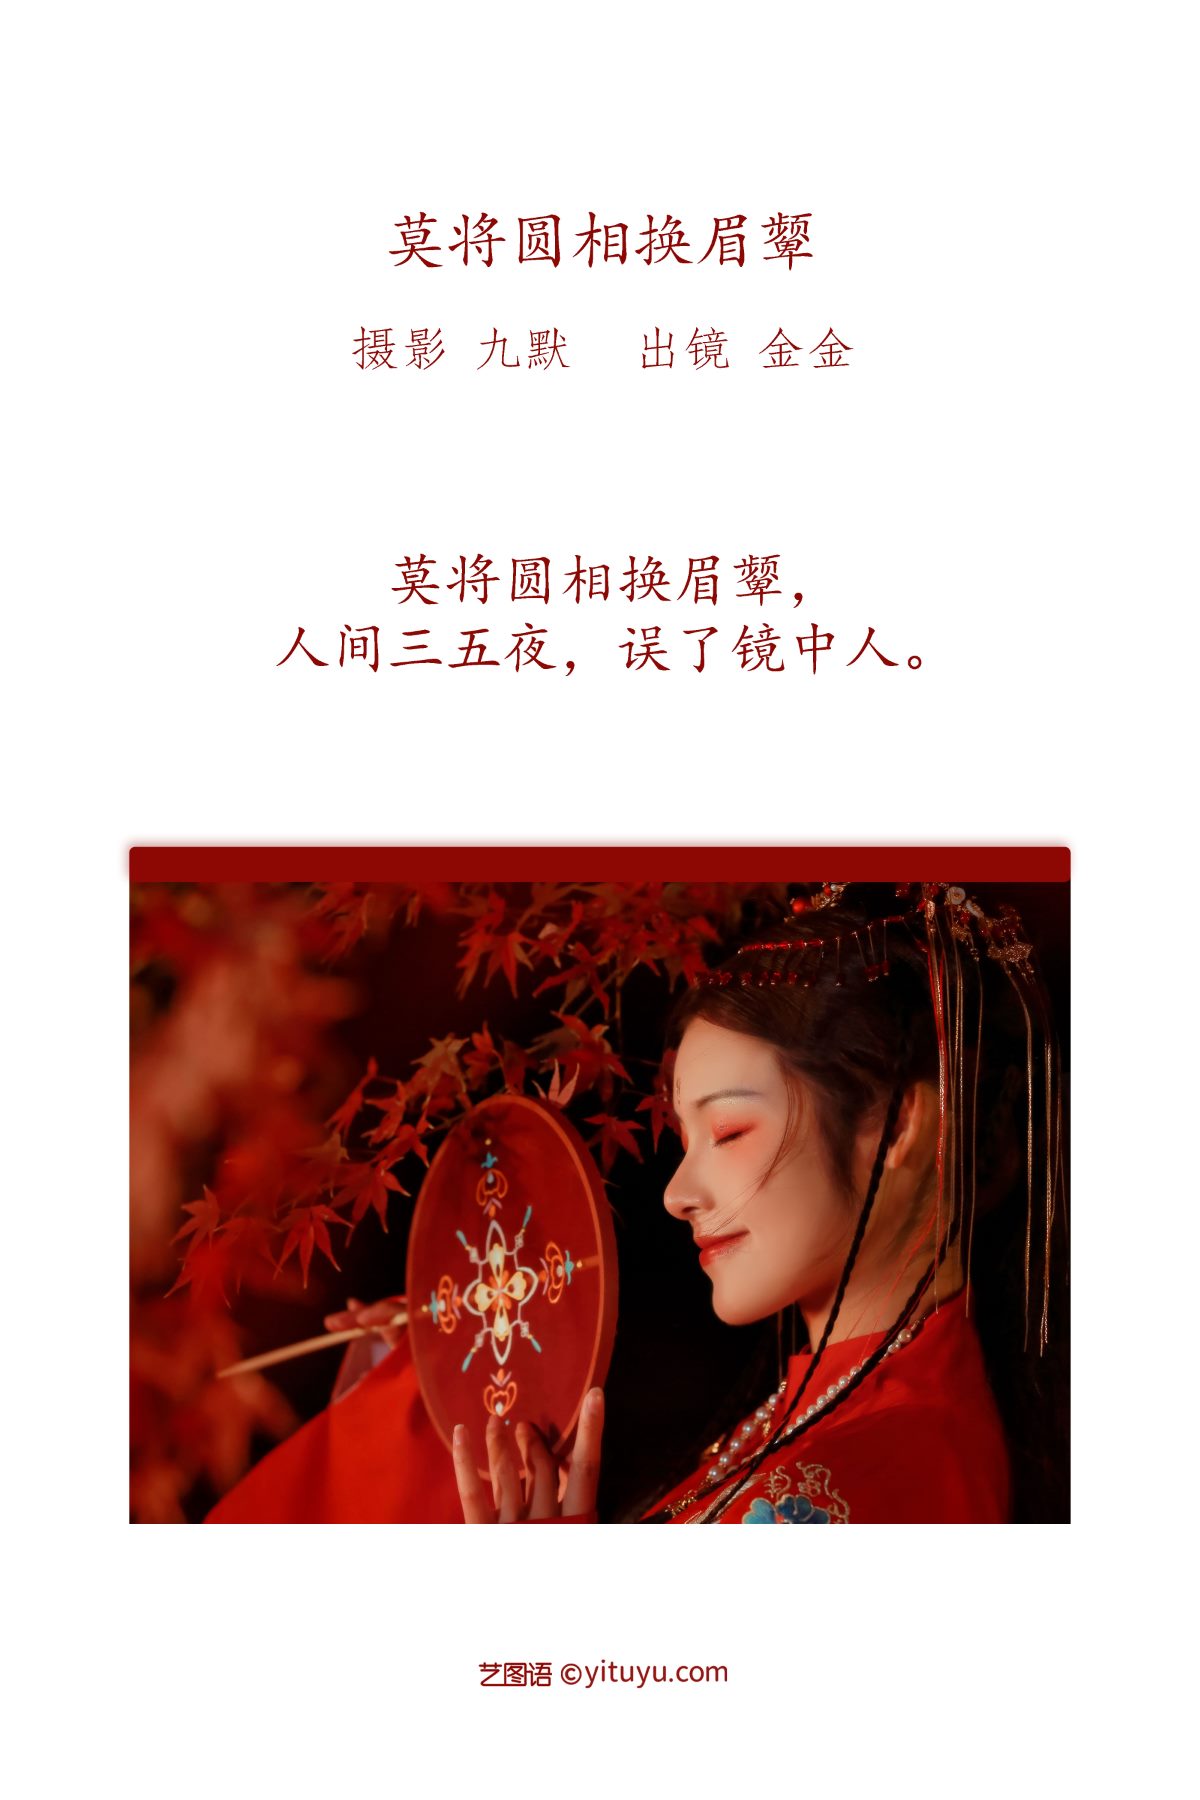 YiTuYu艺图语 Vol 3088 A Li Ma Ma Zhang Men Ren 0002 9301857405.jpg